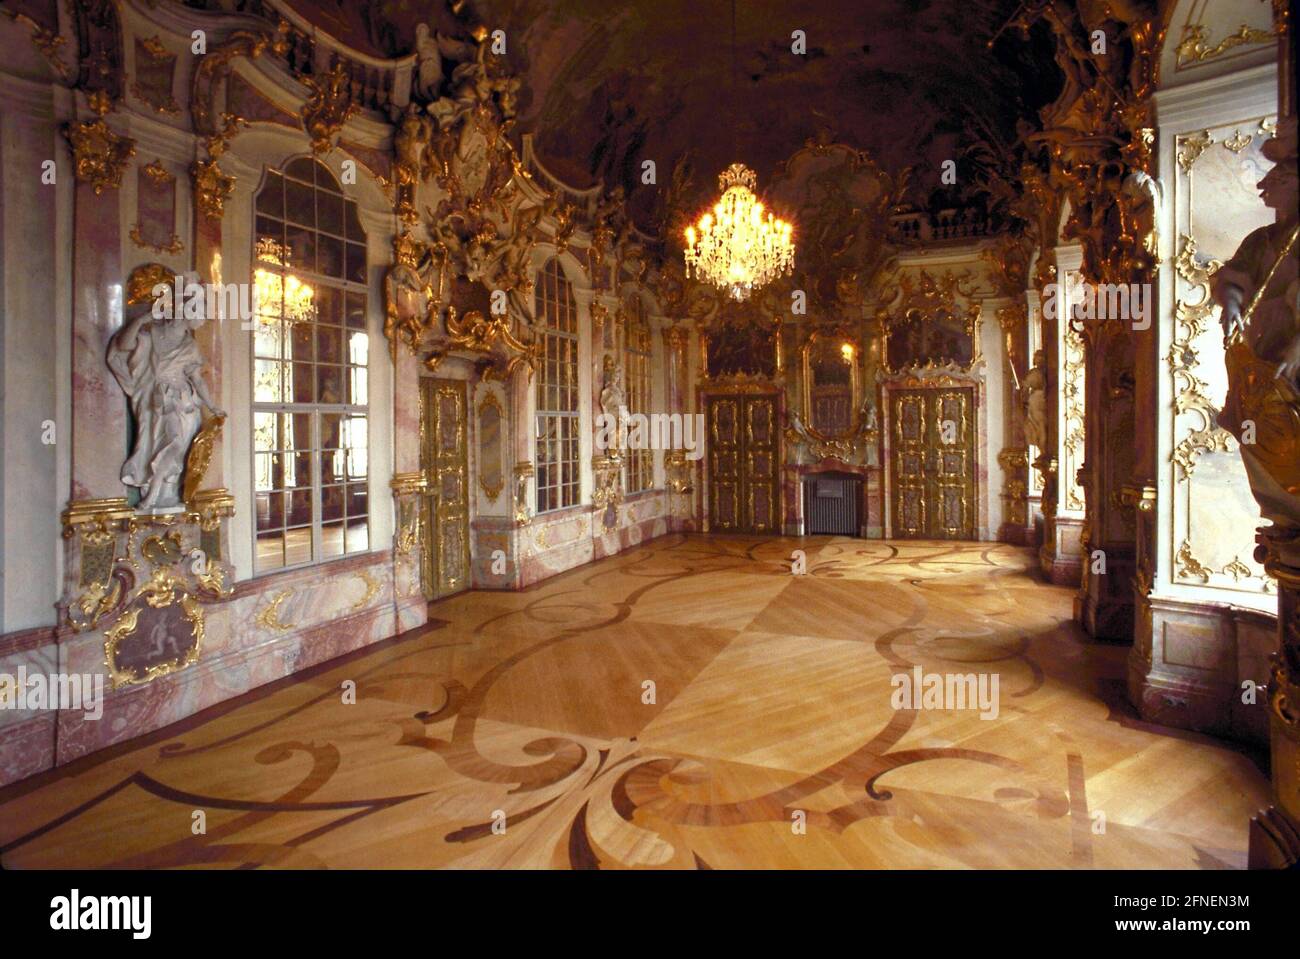 Salle du trône de la résidence princière à Kempten. La résidence a été construite après la guerre de trente ans (1618-48) comme centre de la collégiale, qui a mené une vie propre à côté de la vieille ville jusqu'en 1811. Le hall du Trône de deux étages a été créé en 1740-42. Avec son œuvre de stuc de Johann Georg Üblherr et ses peintures de Franz Georg Hermann, c'est un chef-d'œuvre de l'art spatial Rococo dans la Souabe bavaroise. [traduction automatique] Banque D'Images